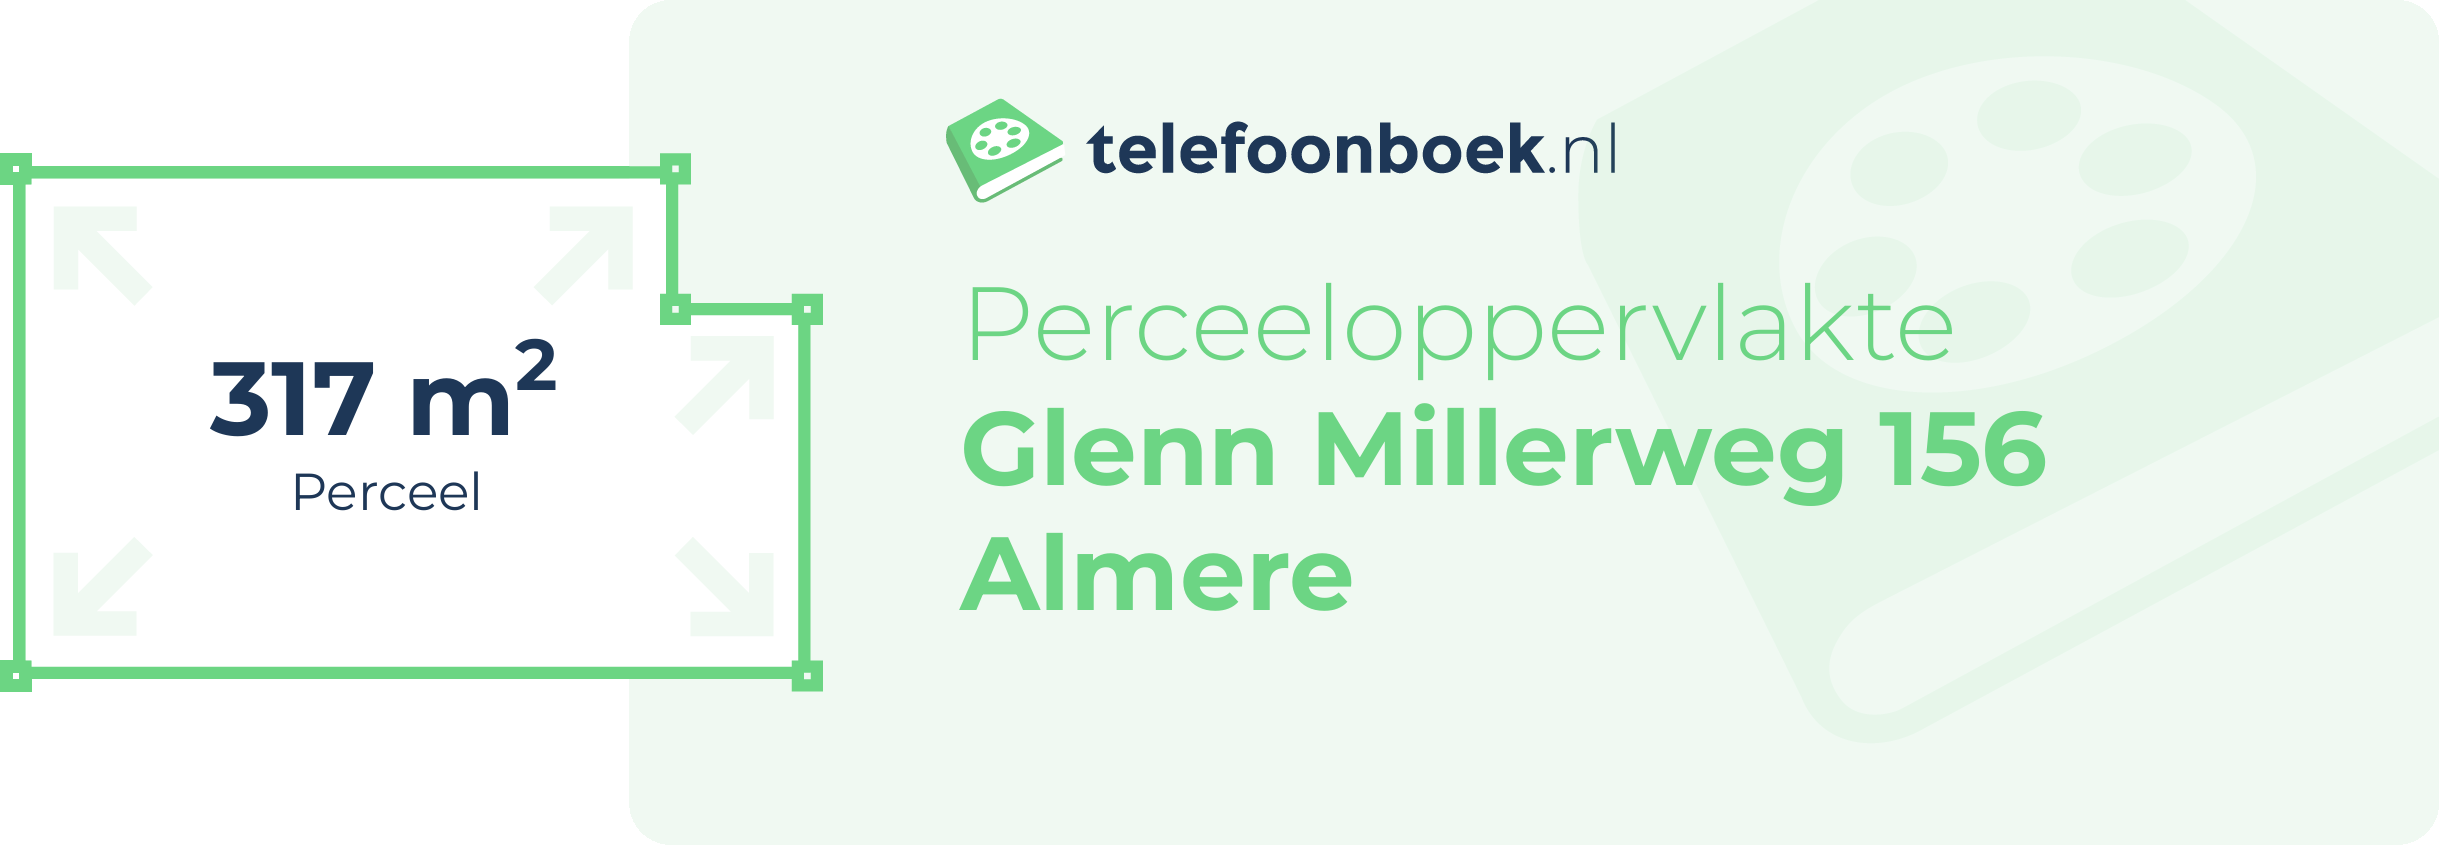 Perceeloppervlakte Glenn Millerweg 156 Almere